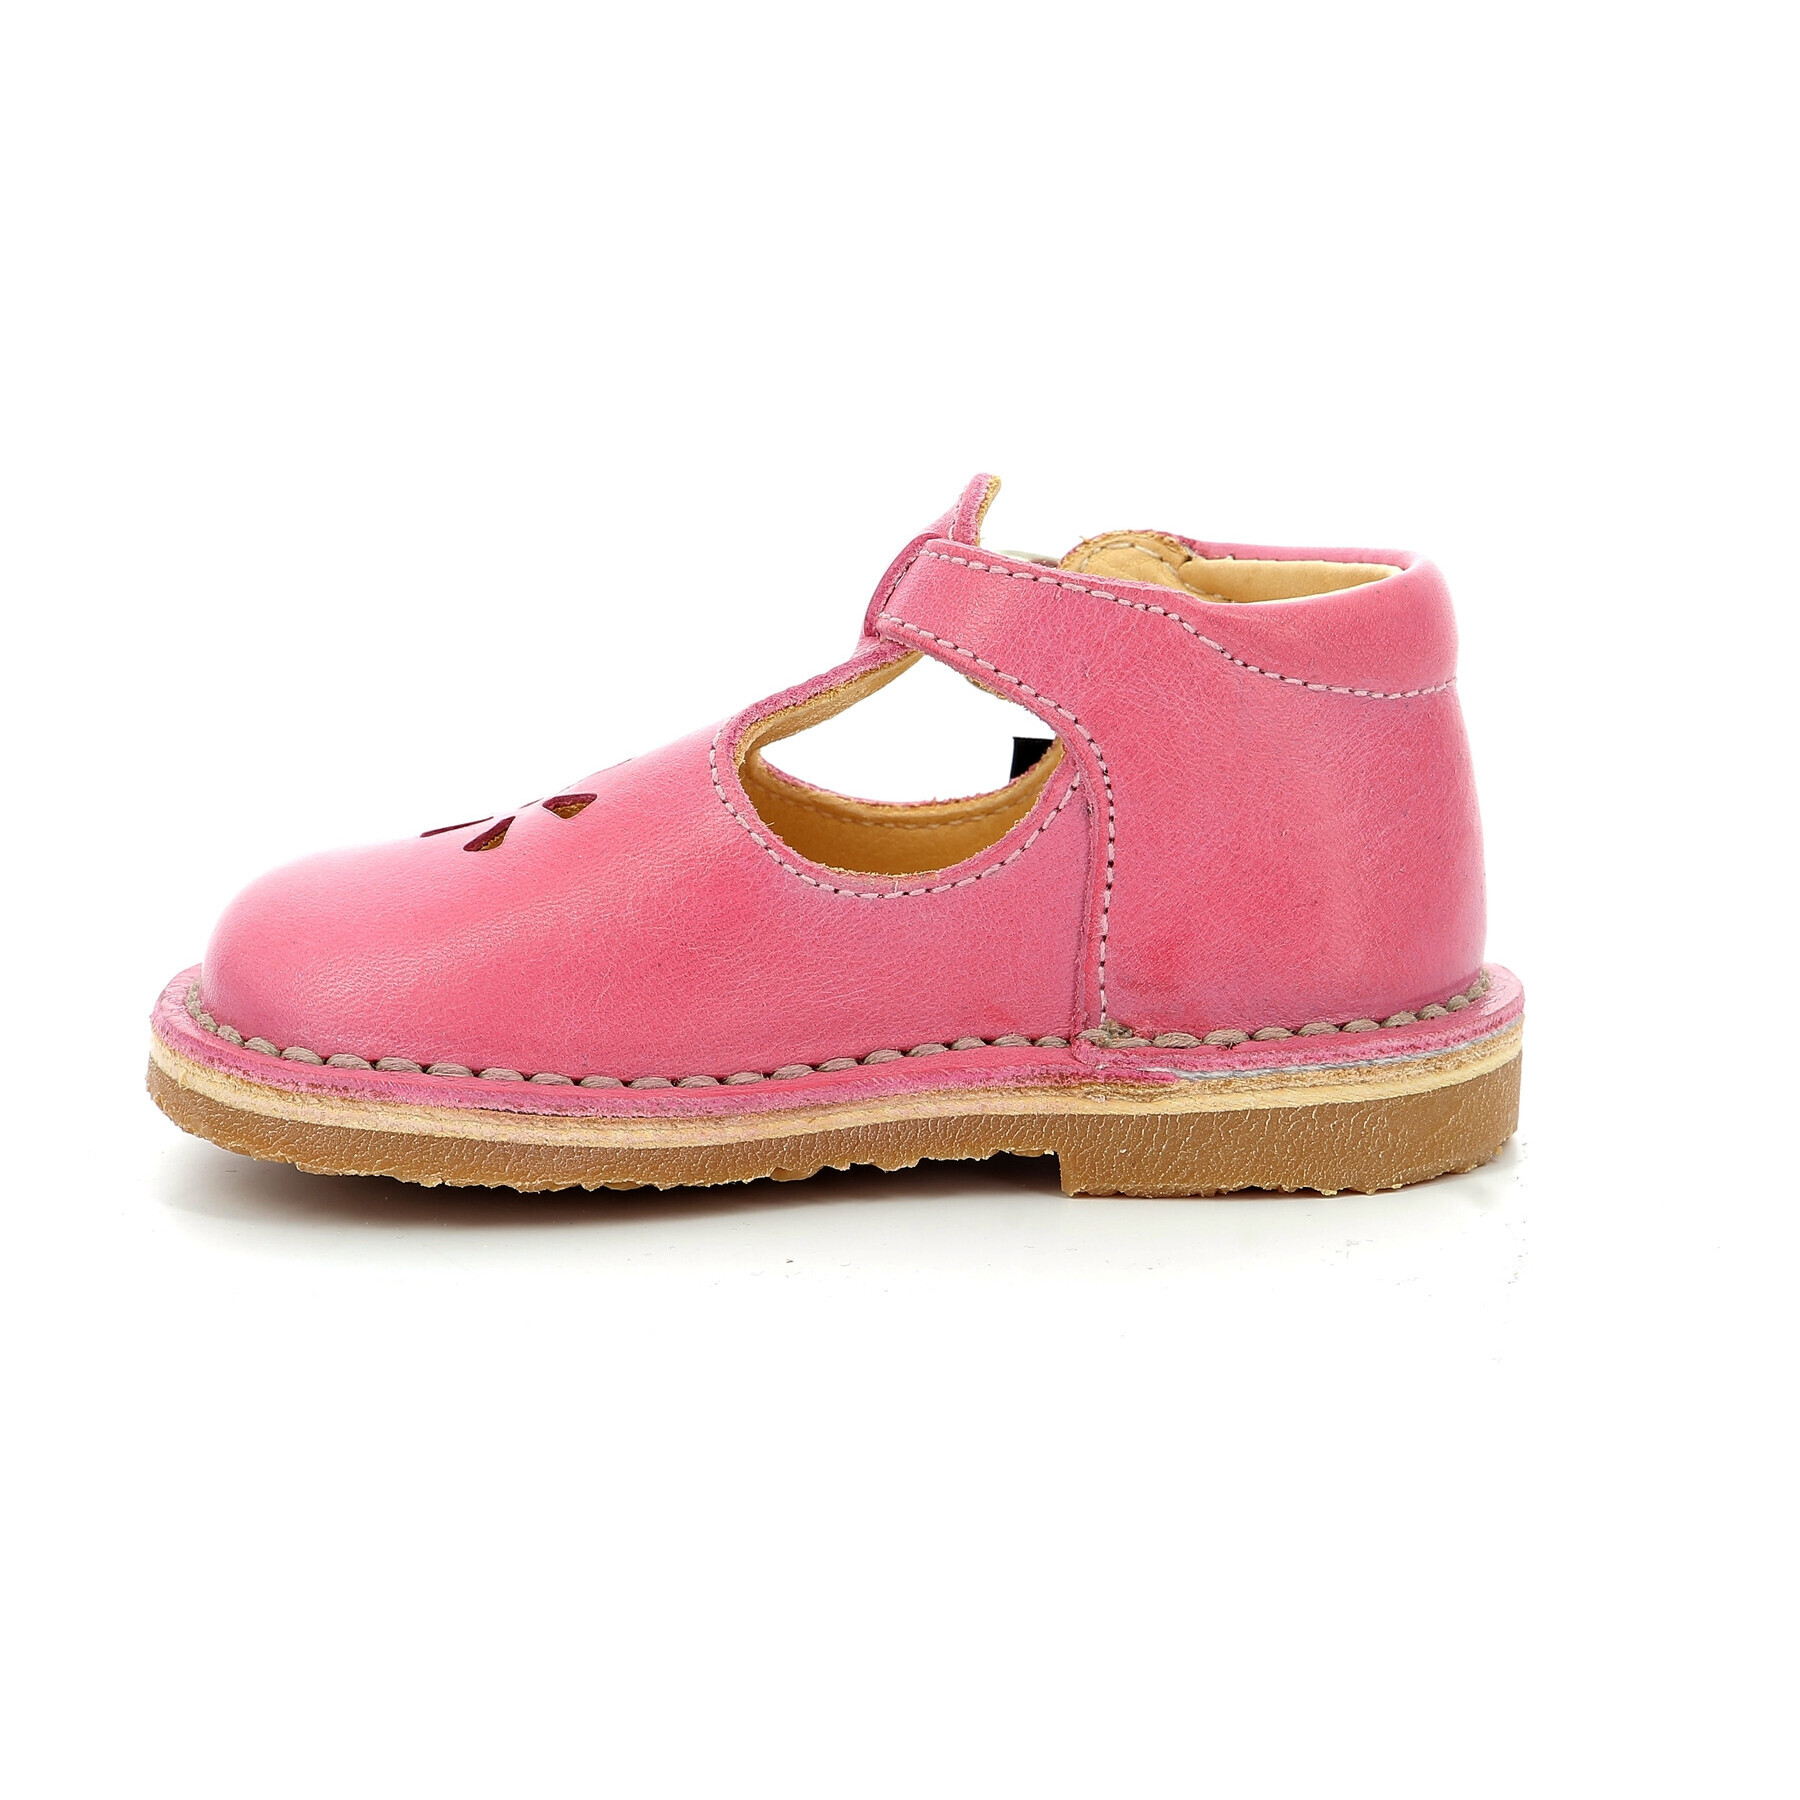 Baby sandals Aster Bimbo-2